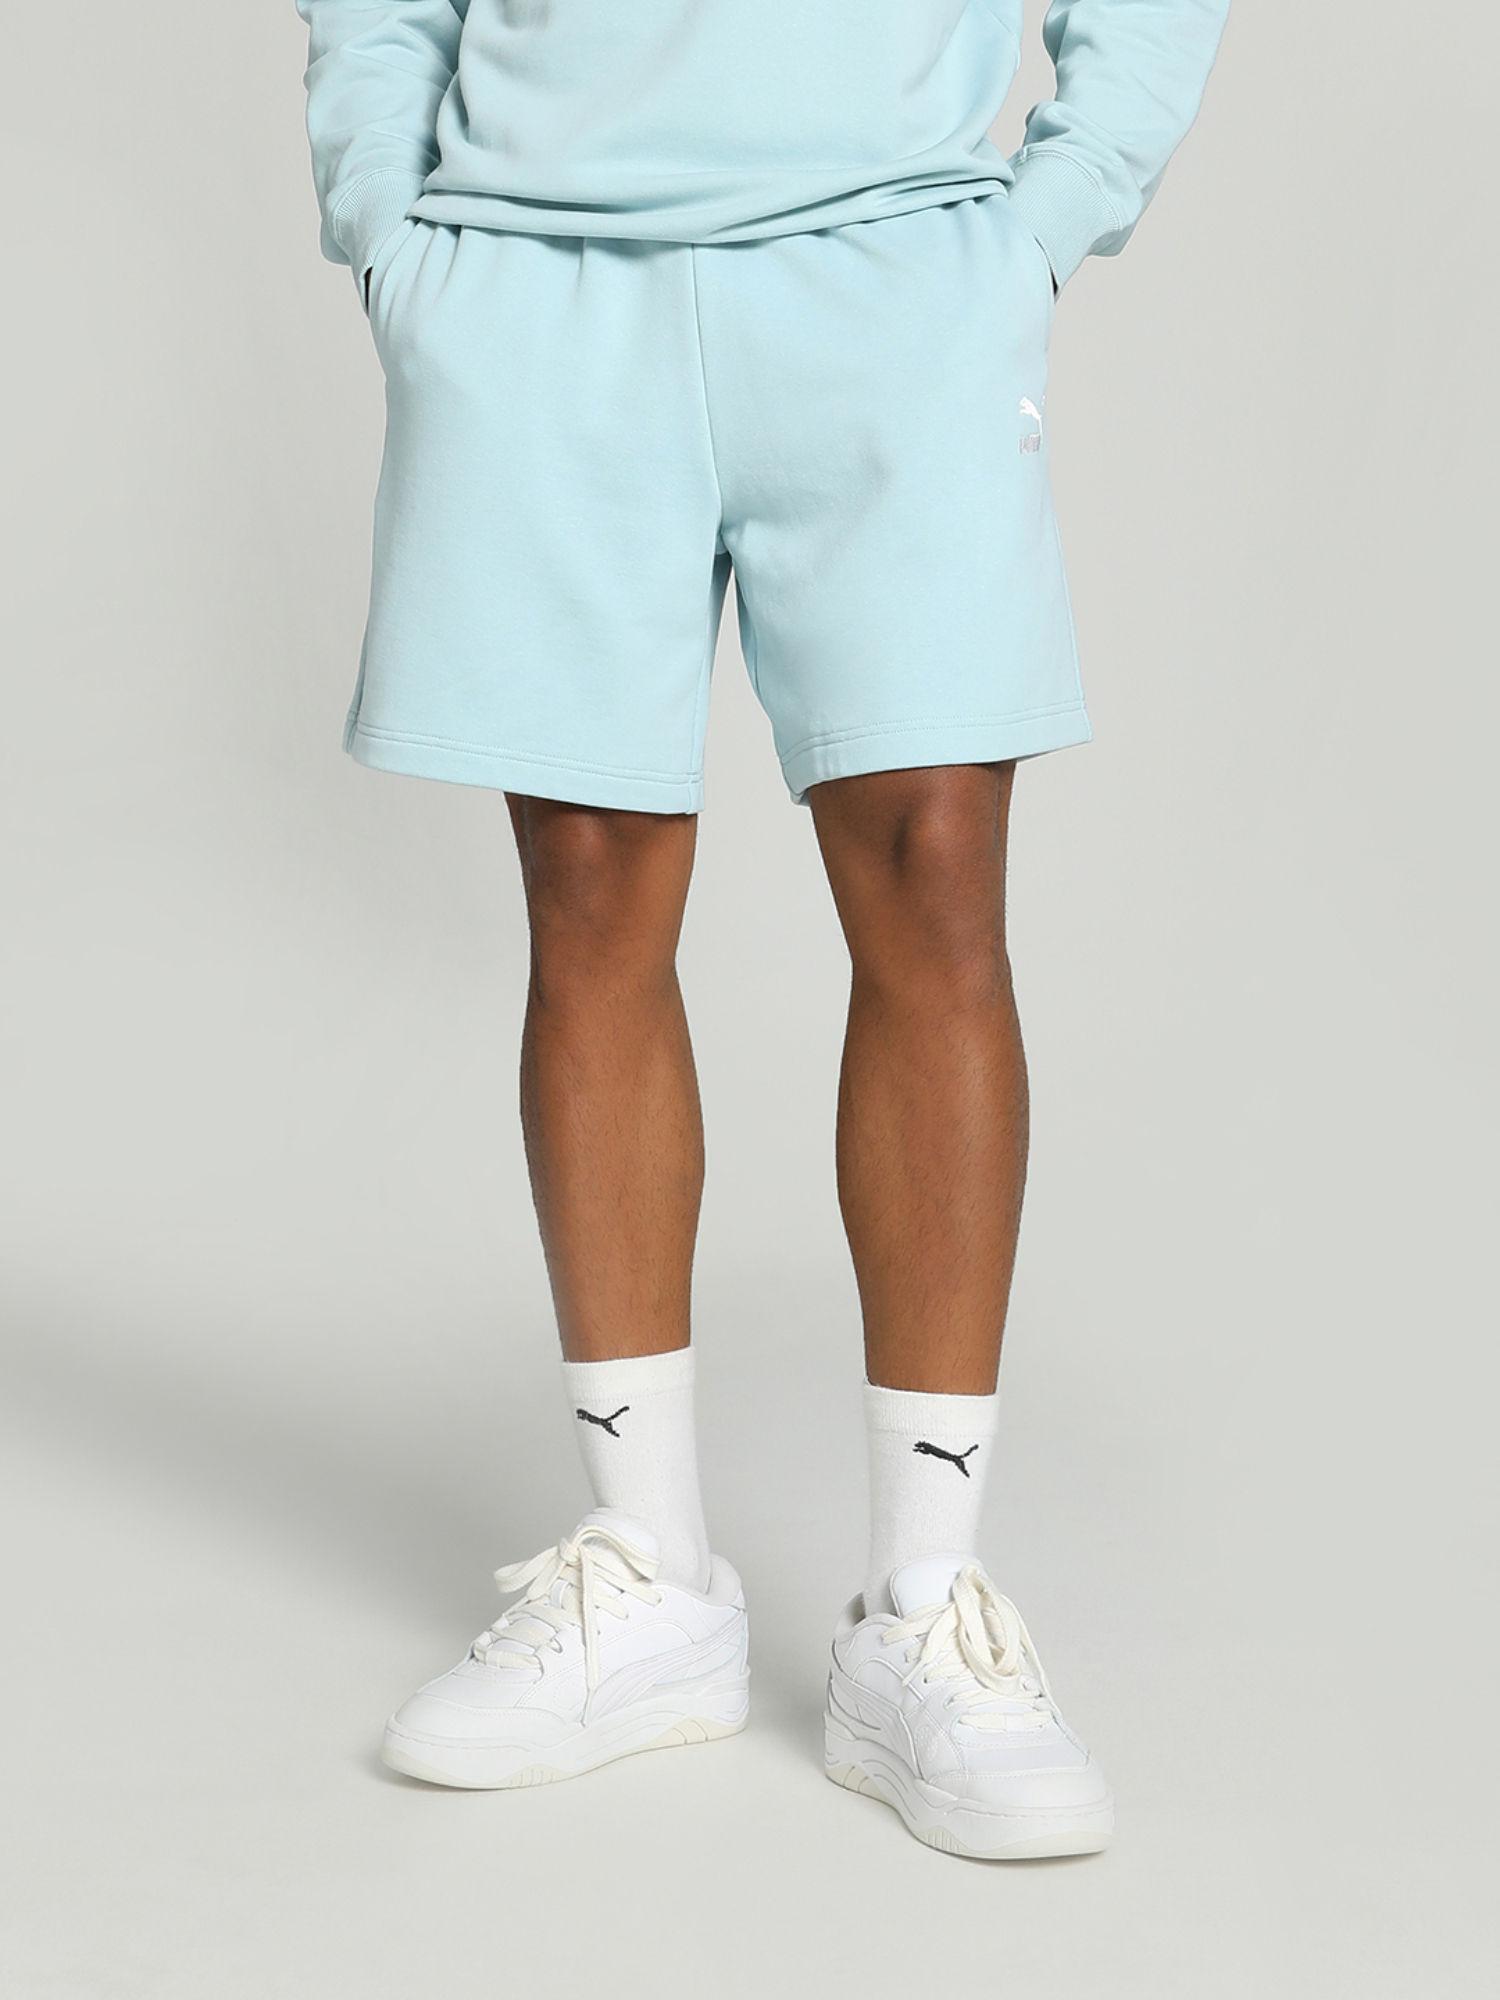 better classics unisex turquoise shorts